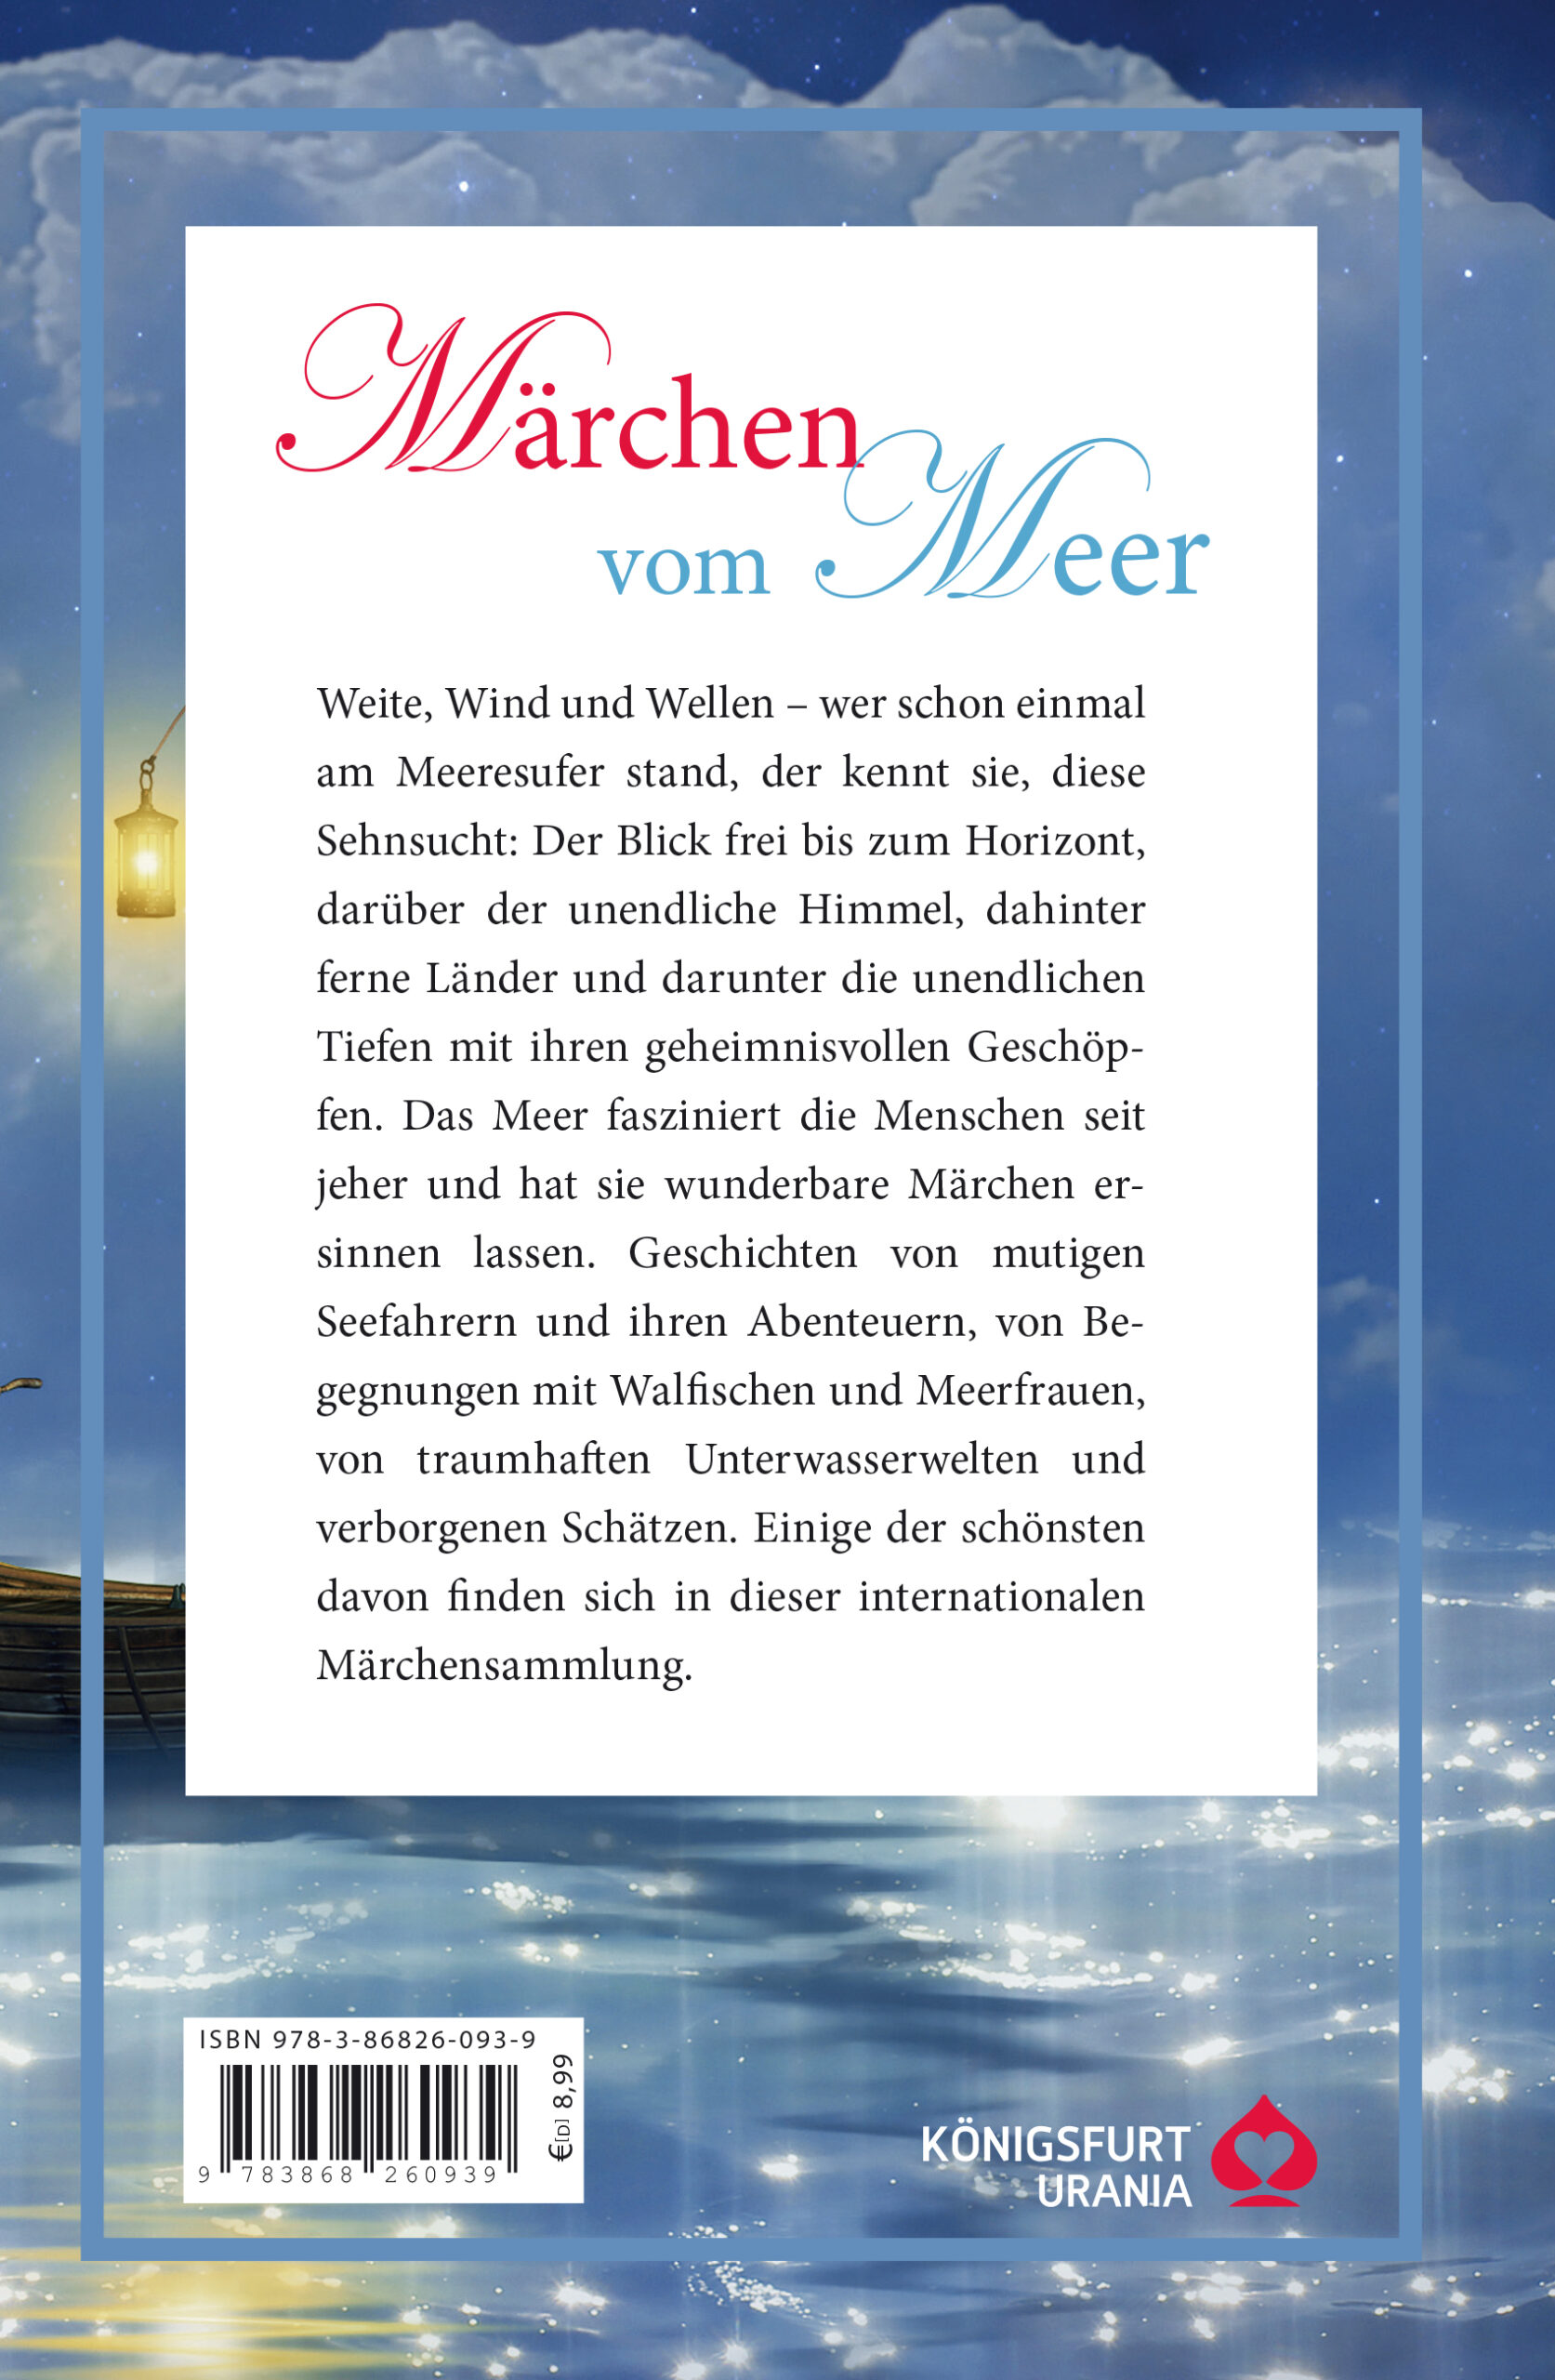 maerchen_vom_meer_U4